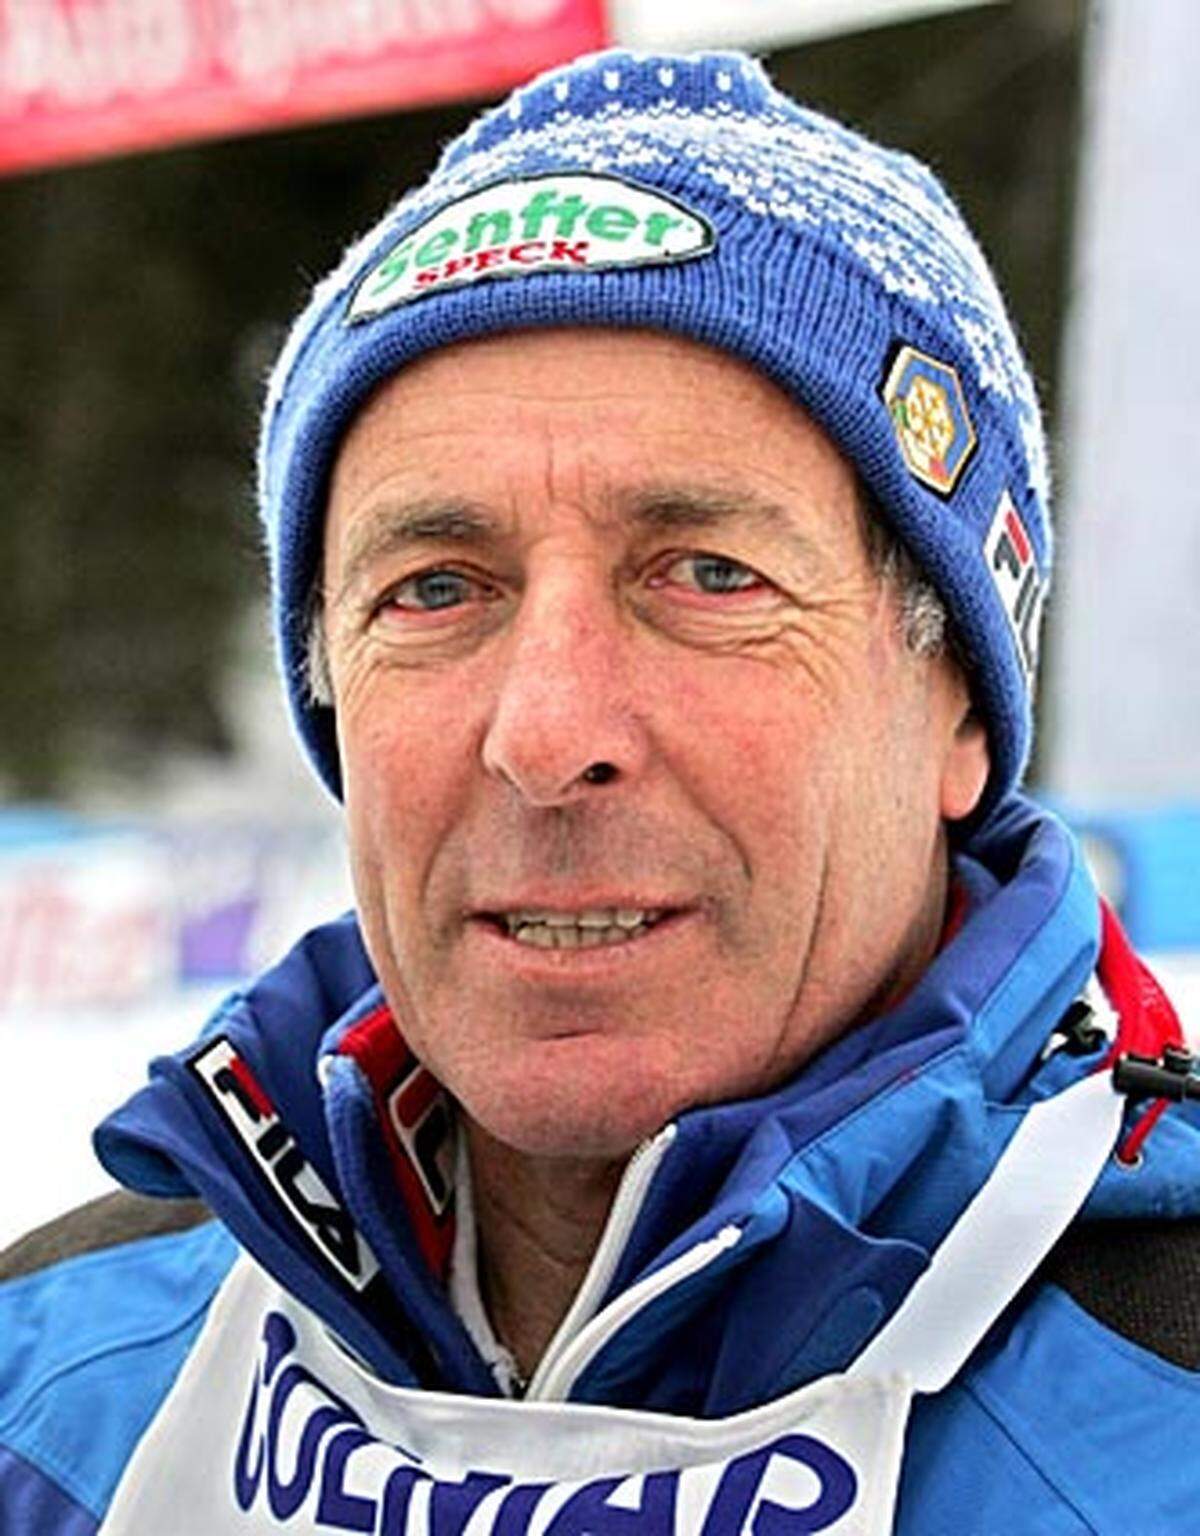 Der Südtiroler holte wie Stenmark fünfmal Gold, dazu aber gleich zweimal Silber. In Sapporo 1972 und St. Moritz 1974 wurde er jeweils Doppelweltmeister und nahm noch je eine Silbermedaille mit.